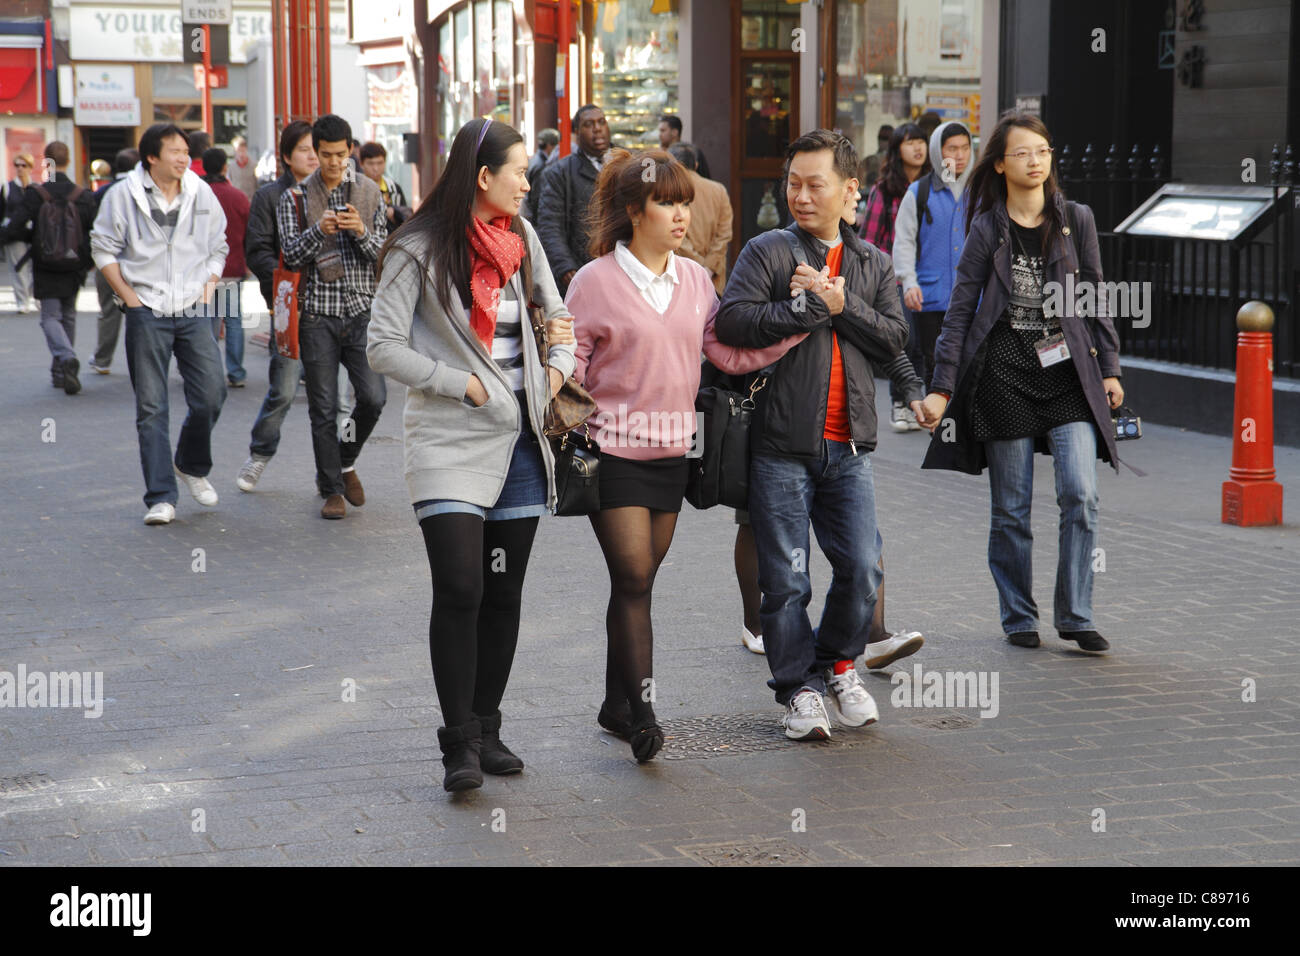 Los peatones, Gerrard Street, Londres, Reino Unido Foto de stock